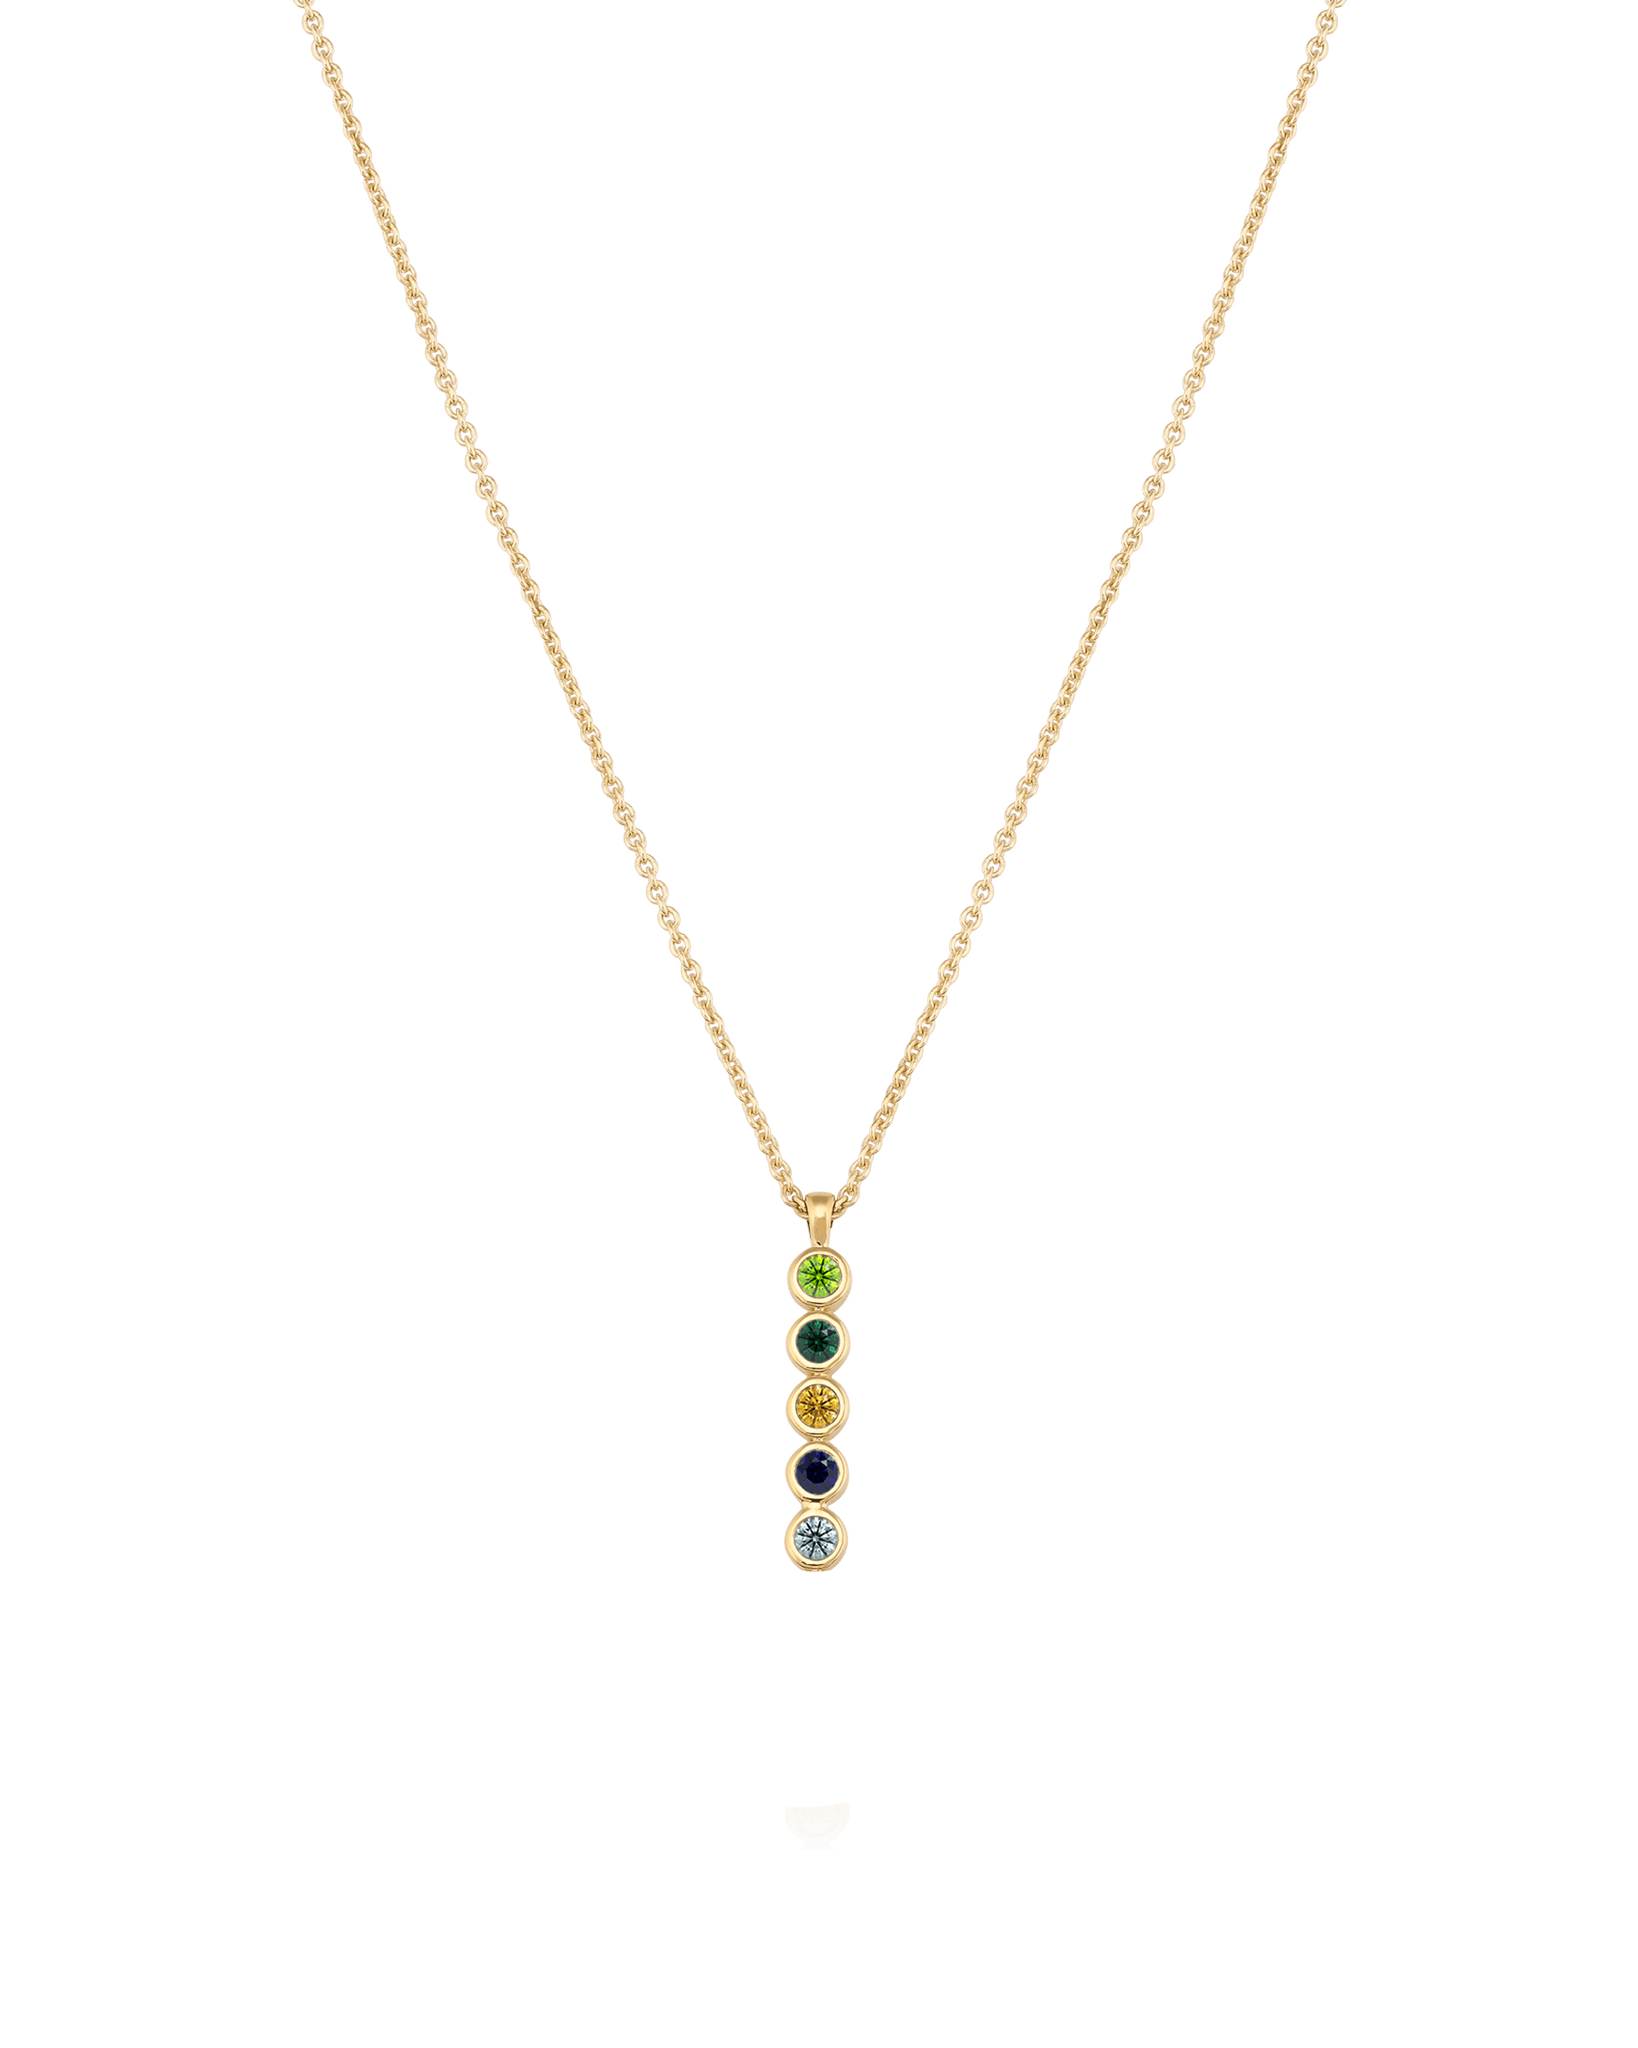 Birthstone Bar Chain Necklace - 18K Gold Vermeil Necklaces Gold Vermeil 1 Birthstone Small - 16" 